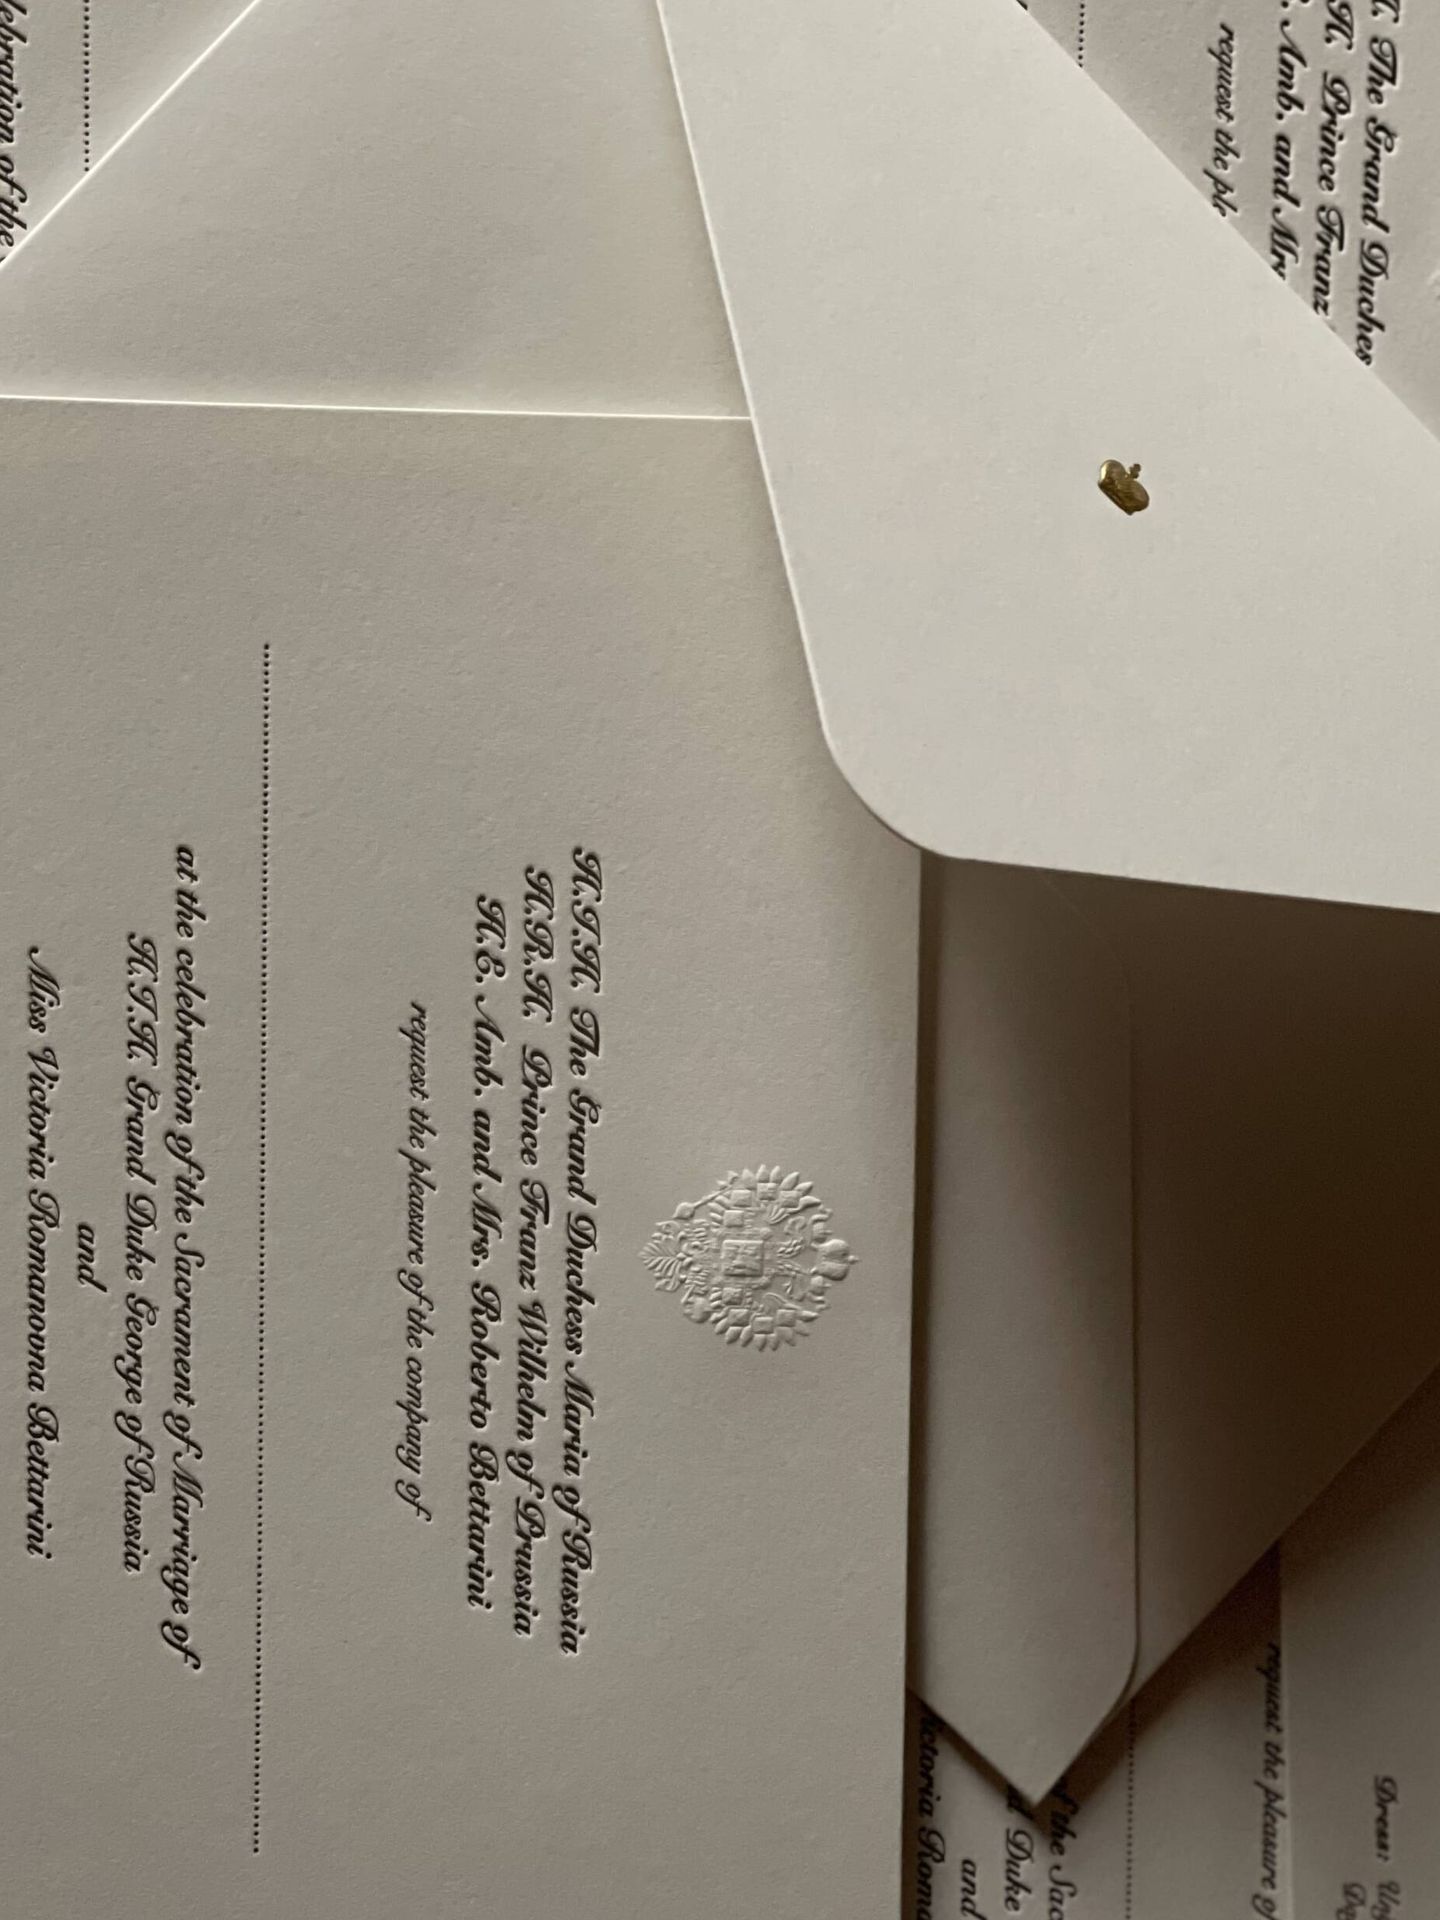 Los más de 1.000 invitados recibirán la invitación por correo postal. (Foto: Cancillería de la Casa Imperial de Rusia)